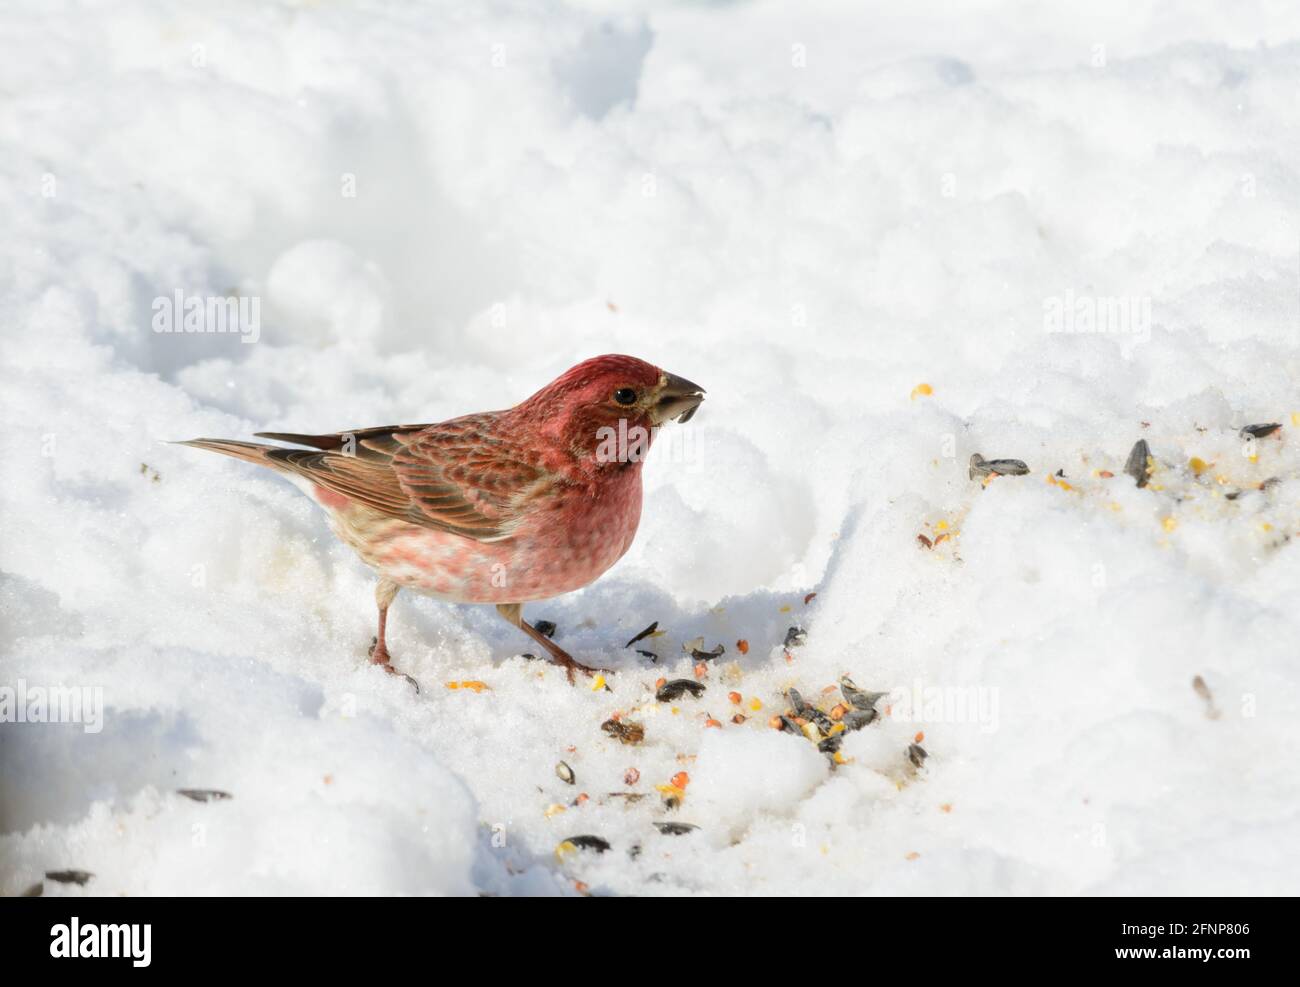 Magnifique mâle Purple Finch mangeant des graines de tournesol dans la neige, le jour d'hiver ensoleillé Banque D'Images